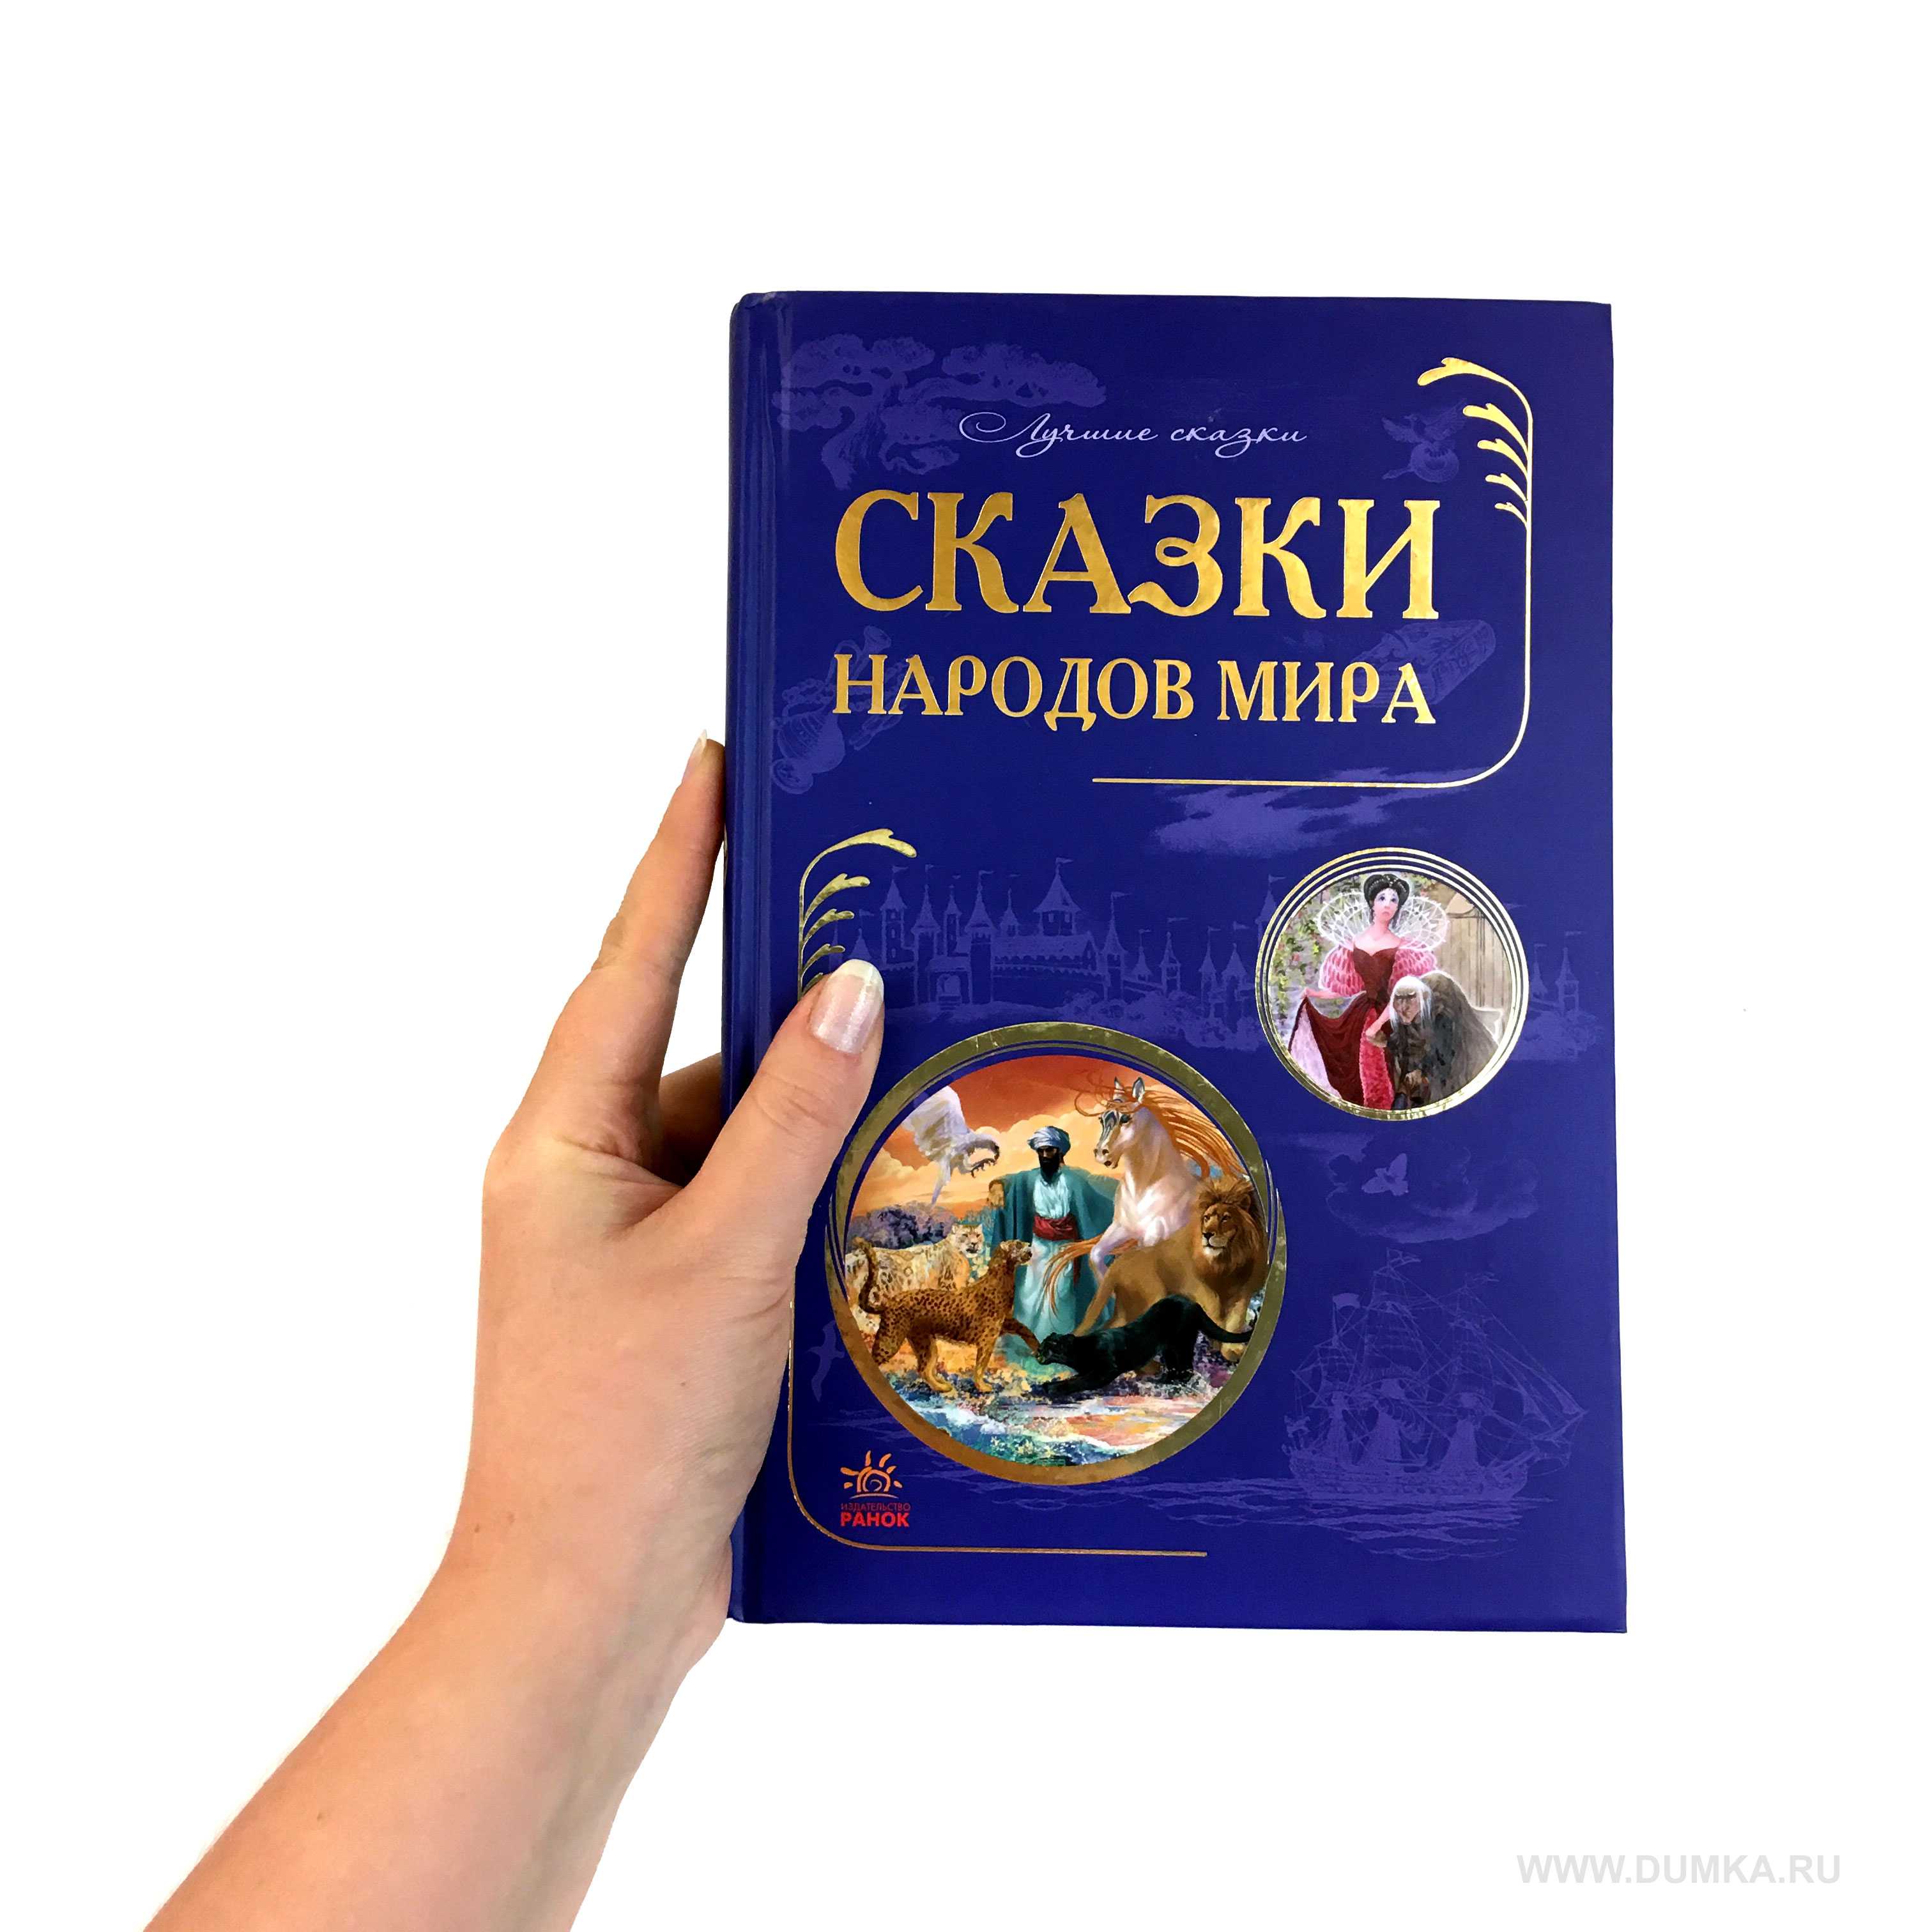 Сказки народов мира. сборник сказок для детей